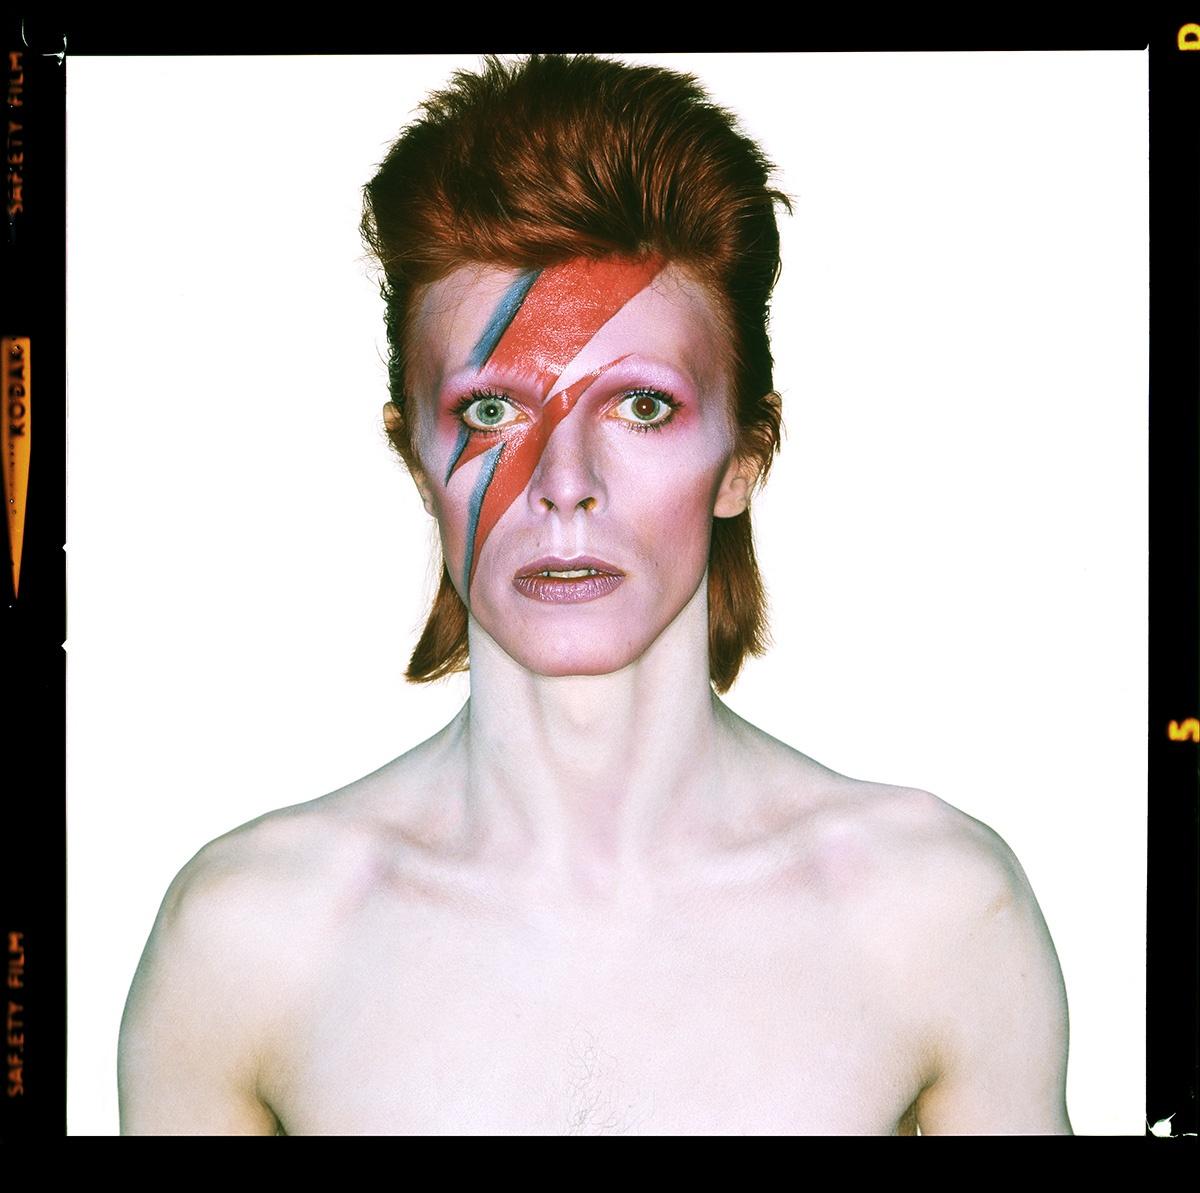 David Bowie als "Aladdin Sane", 1973 - Brian Duffy (Porträtfotografie)
Von David Bowie und Brian Duffy mitunterzeichnet, aus einer limitierten Auflage von 25 Stück 
Archivierungs-Pigmentdruck
40 x 40 Zoll
Aus einer Auflage von 25 Stück (die letzten